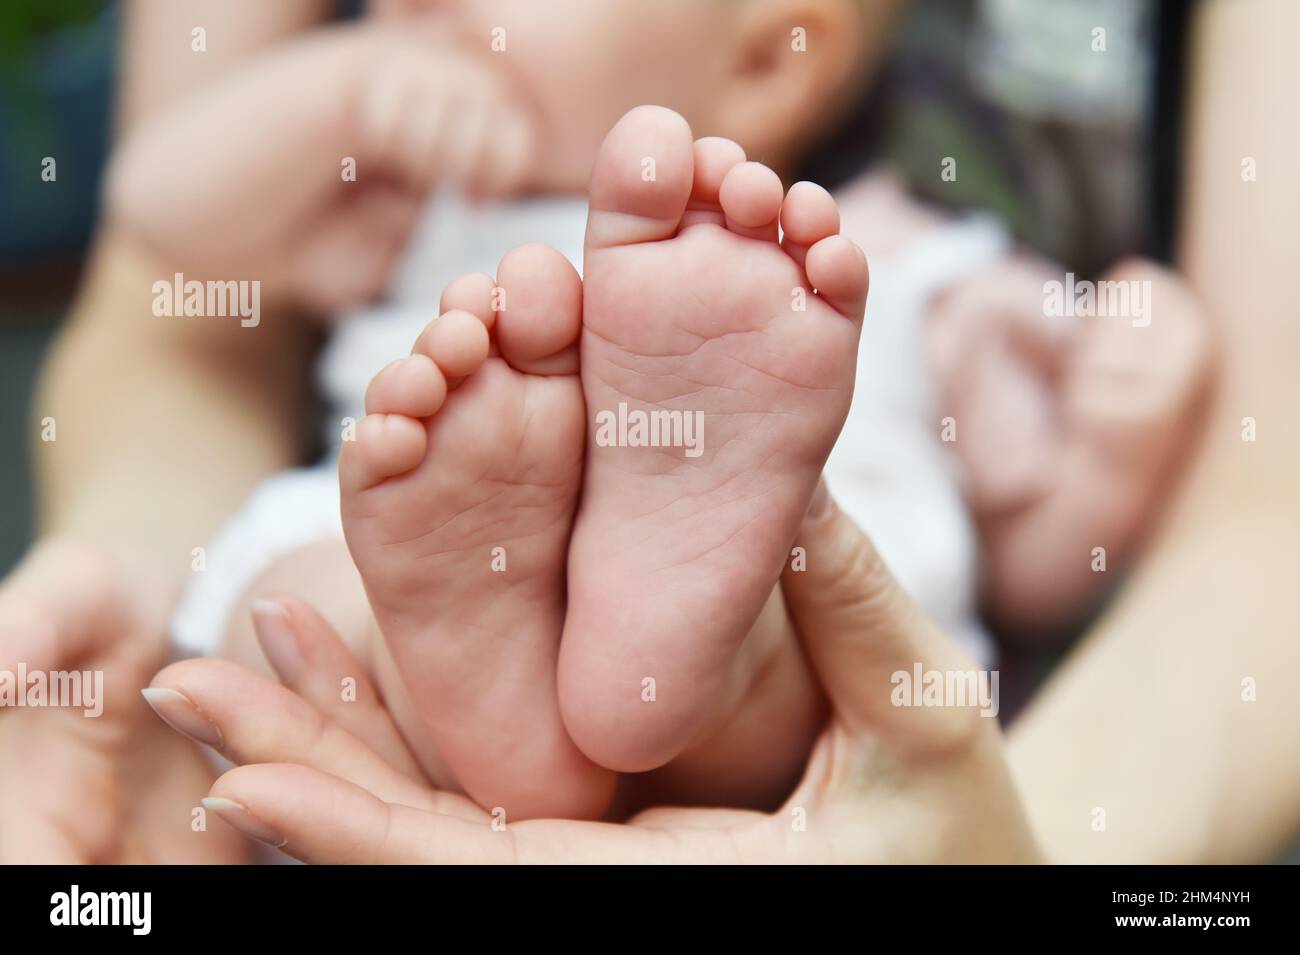 Babyfüße, ein Elternteil fasst ihre neugeborenen Babyfüße in die Hand. Stockfoto